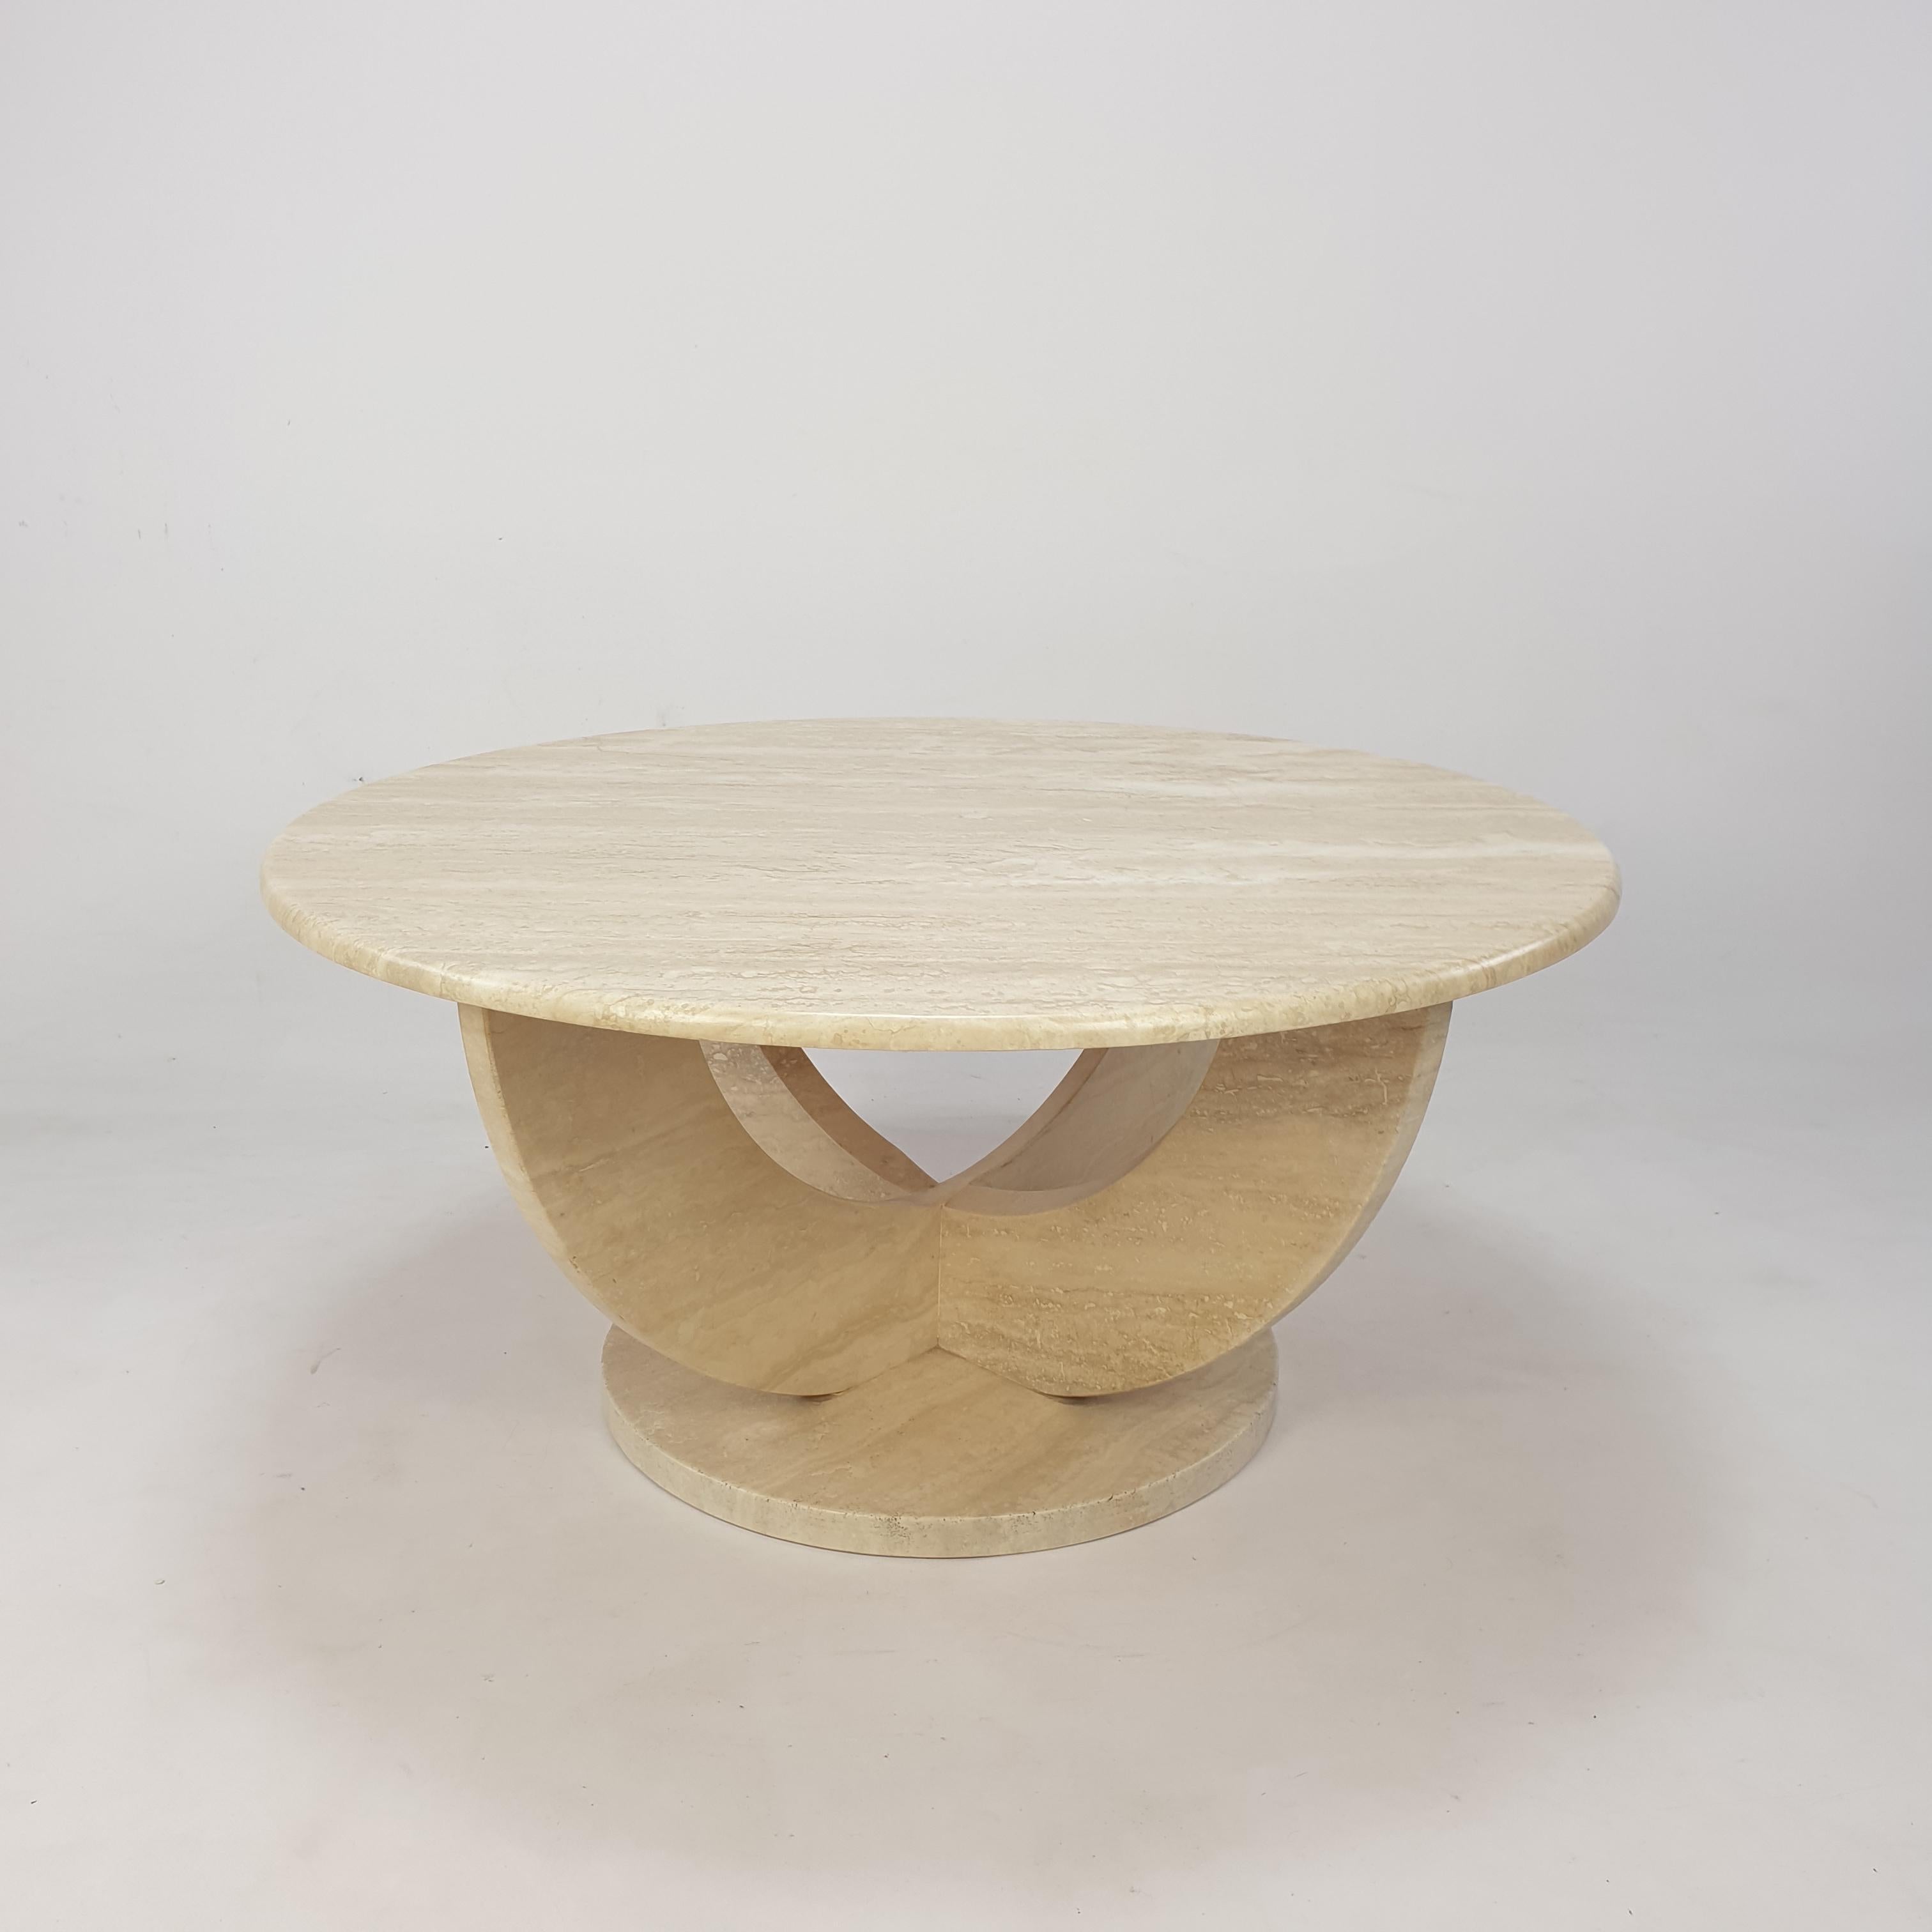 Jolie table basse italienne des années 70, fabriquée à la main en travertin. 

Une assiette ronde sur une base très élégante. 
La plaque est faite d'un très beau travertin et elle est arrondie sur le bord. 

Cette superbe table est en bon état.